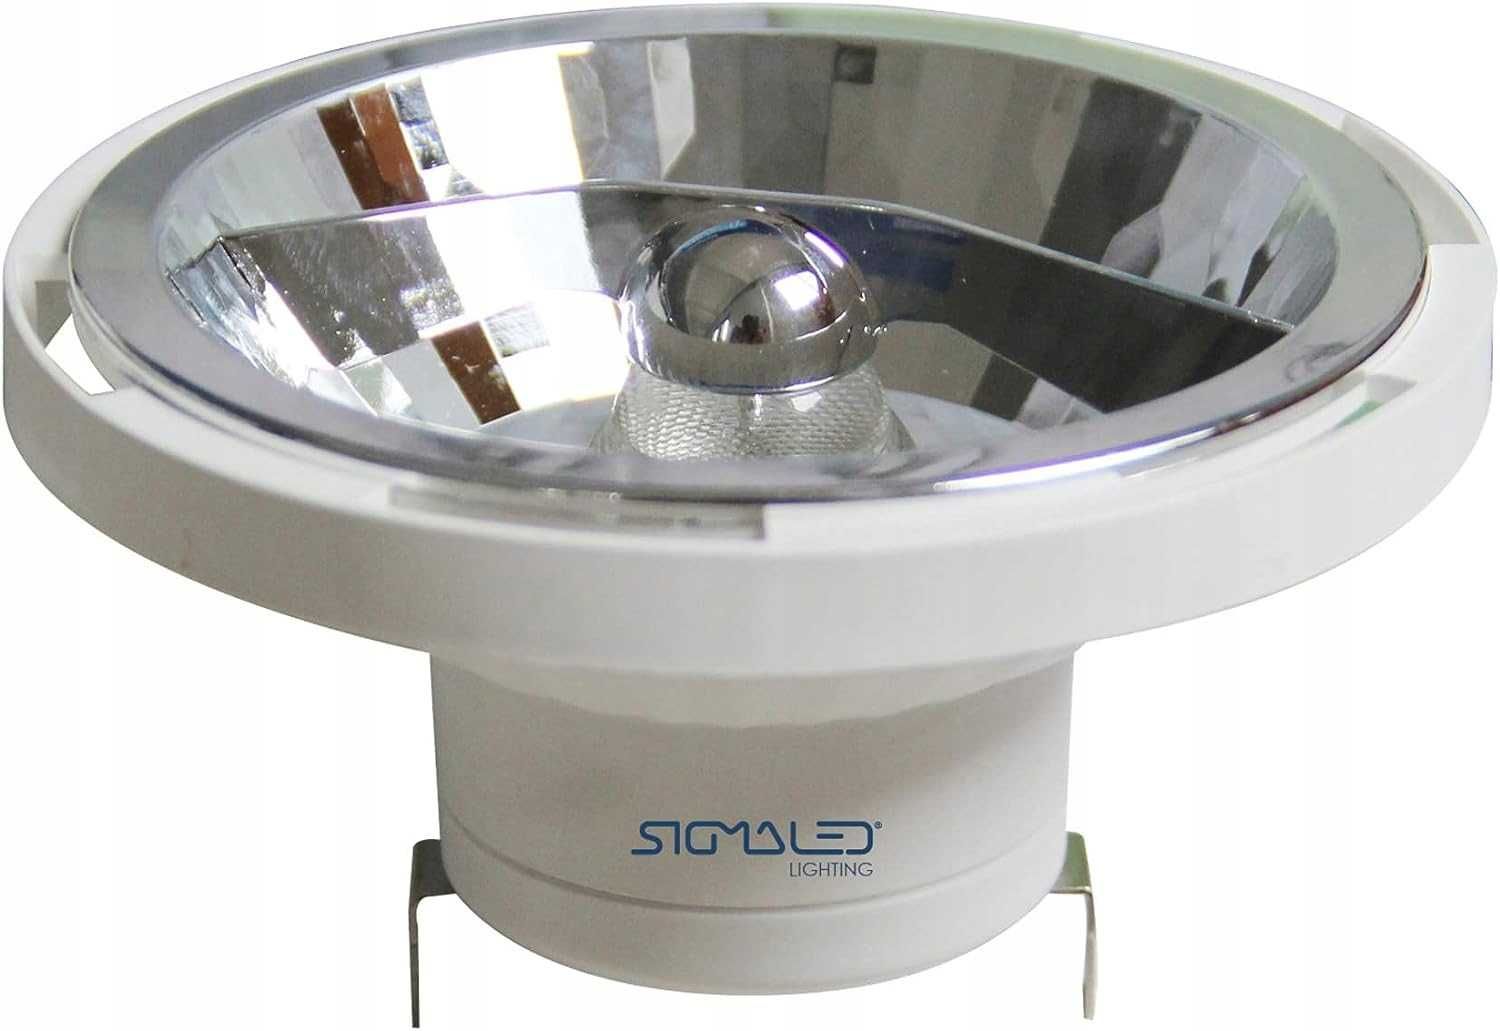 Oświetlenie sigmaledowe - REFLEKTOR LED AR111